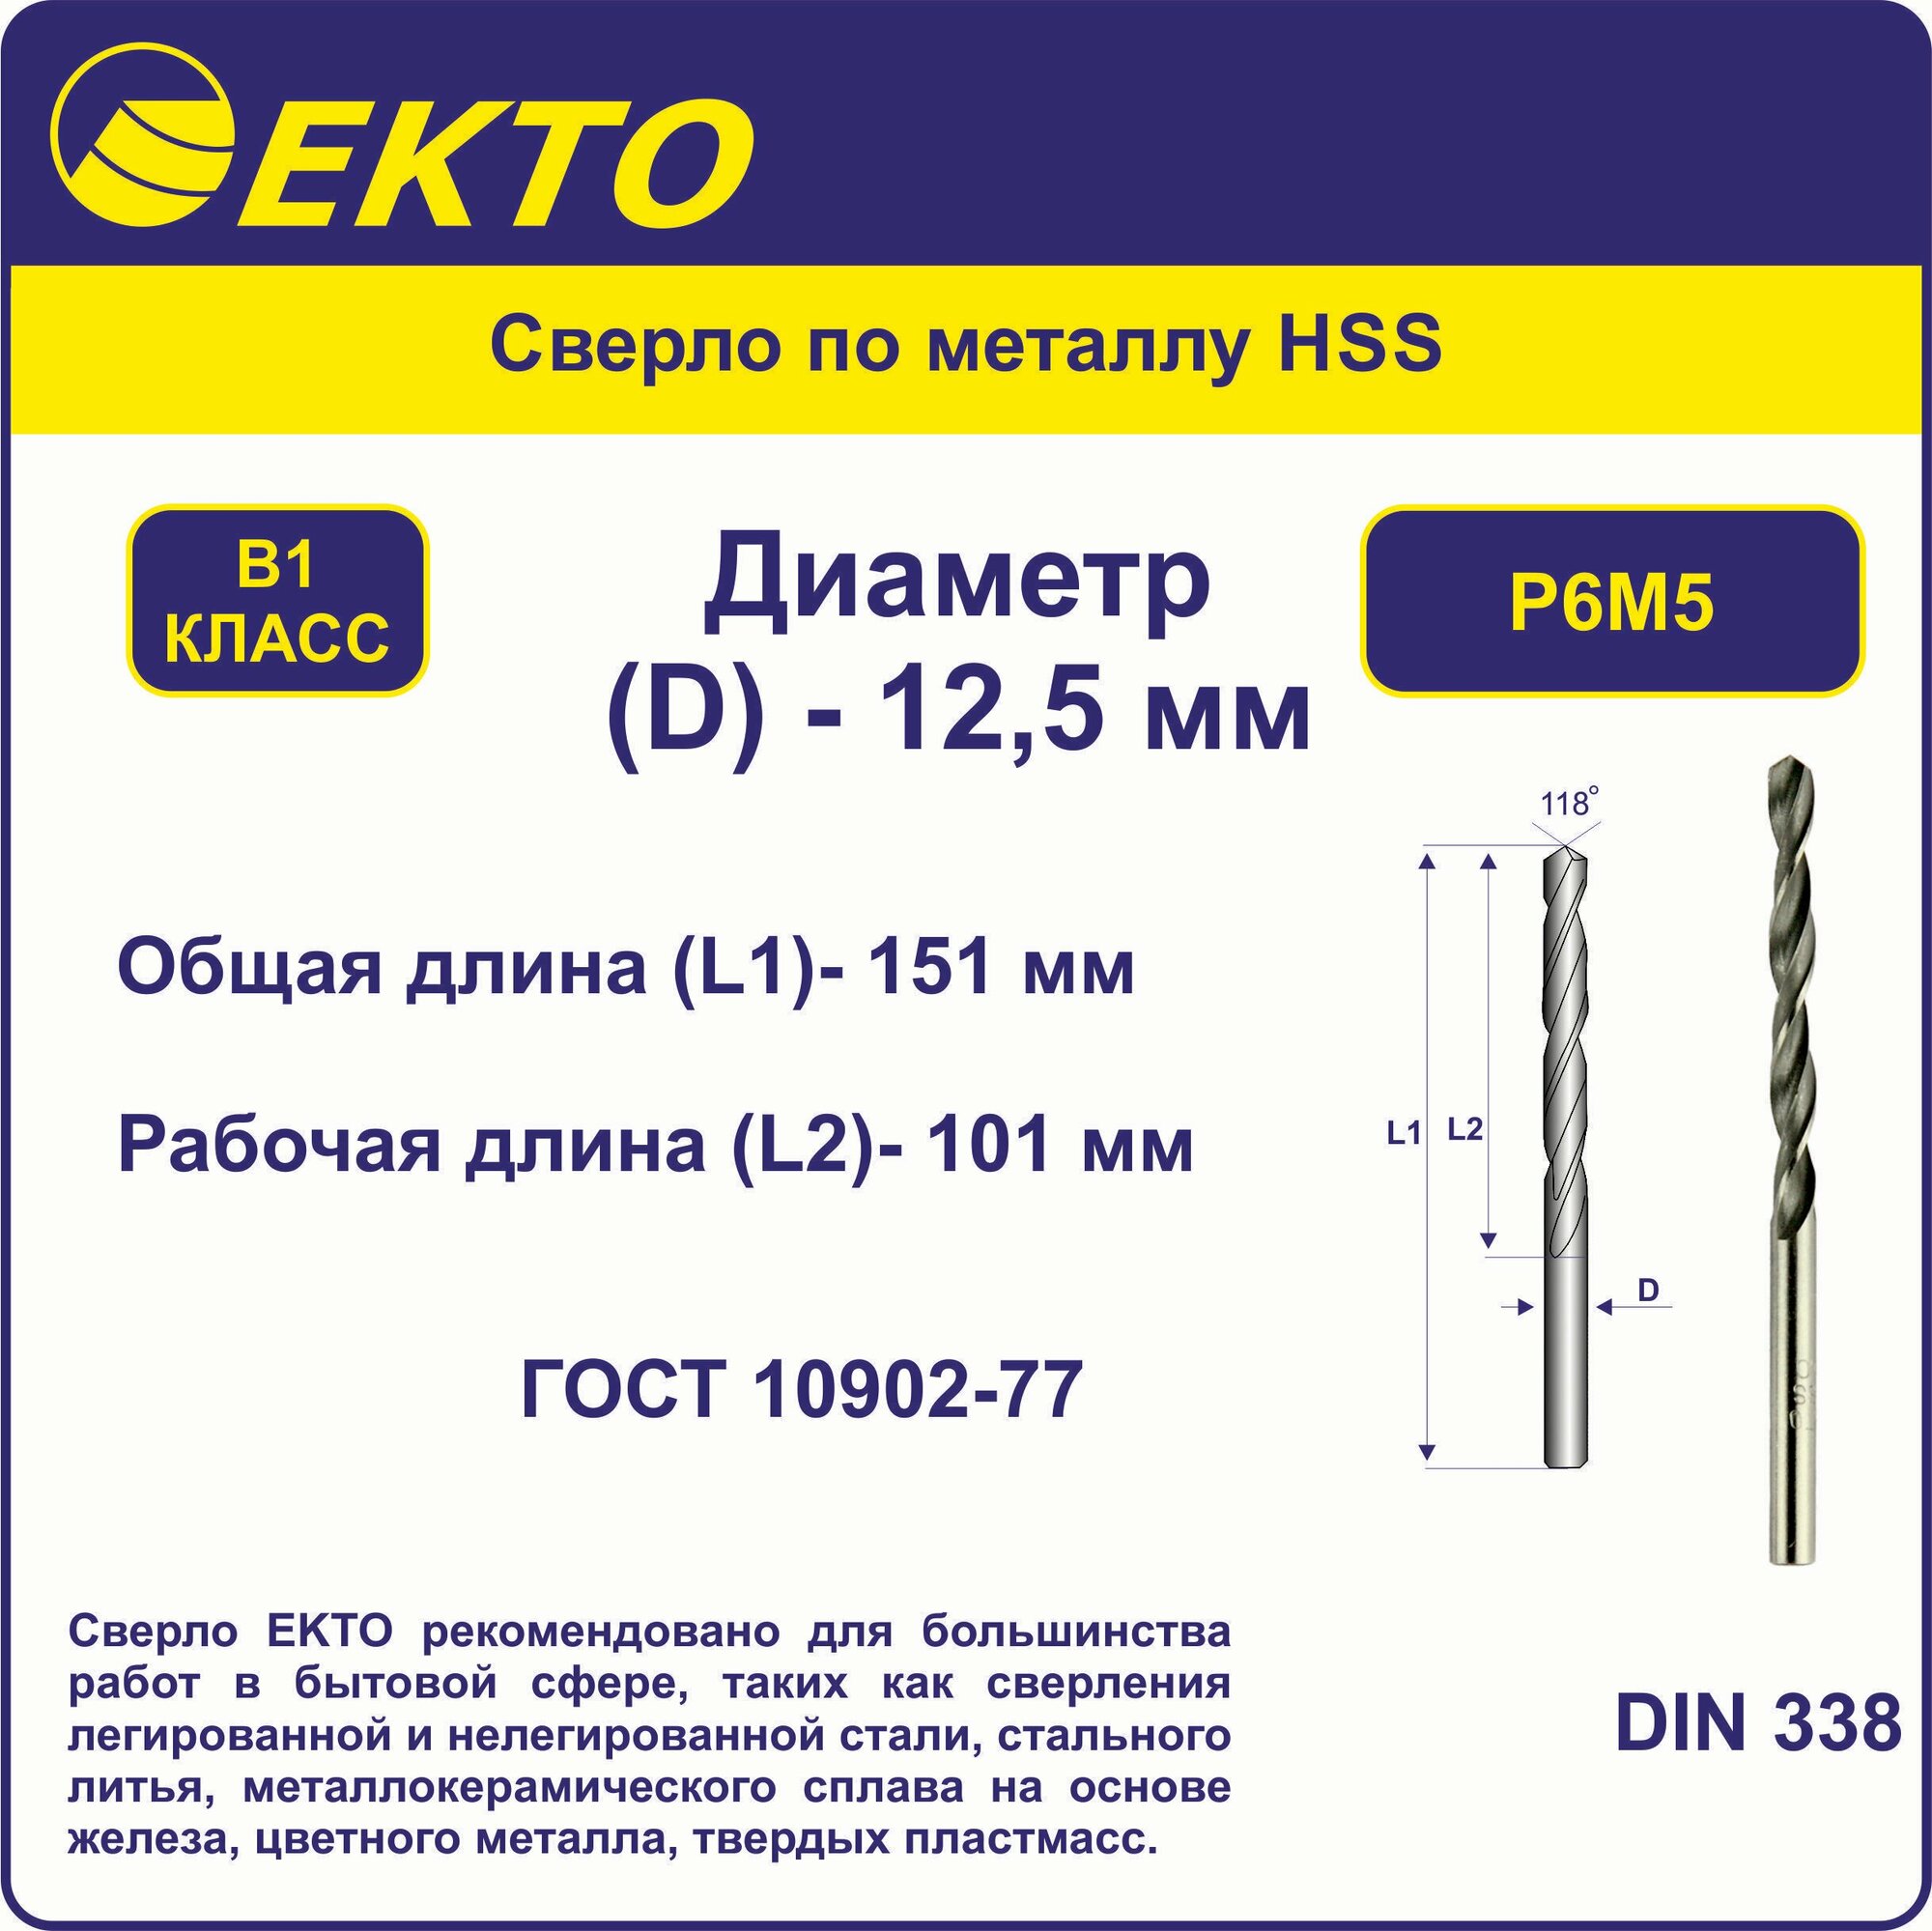 Сверло по металлу HSS 12,5 мм цилиндрический хвостовик EKTO